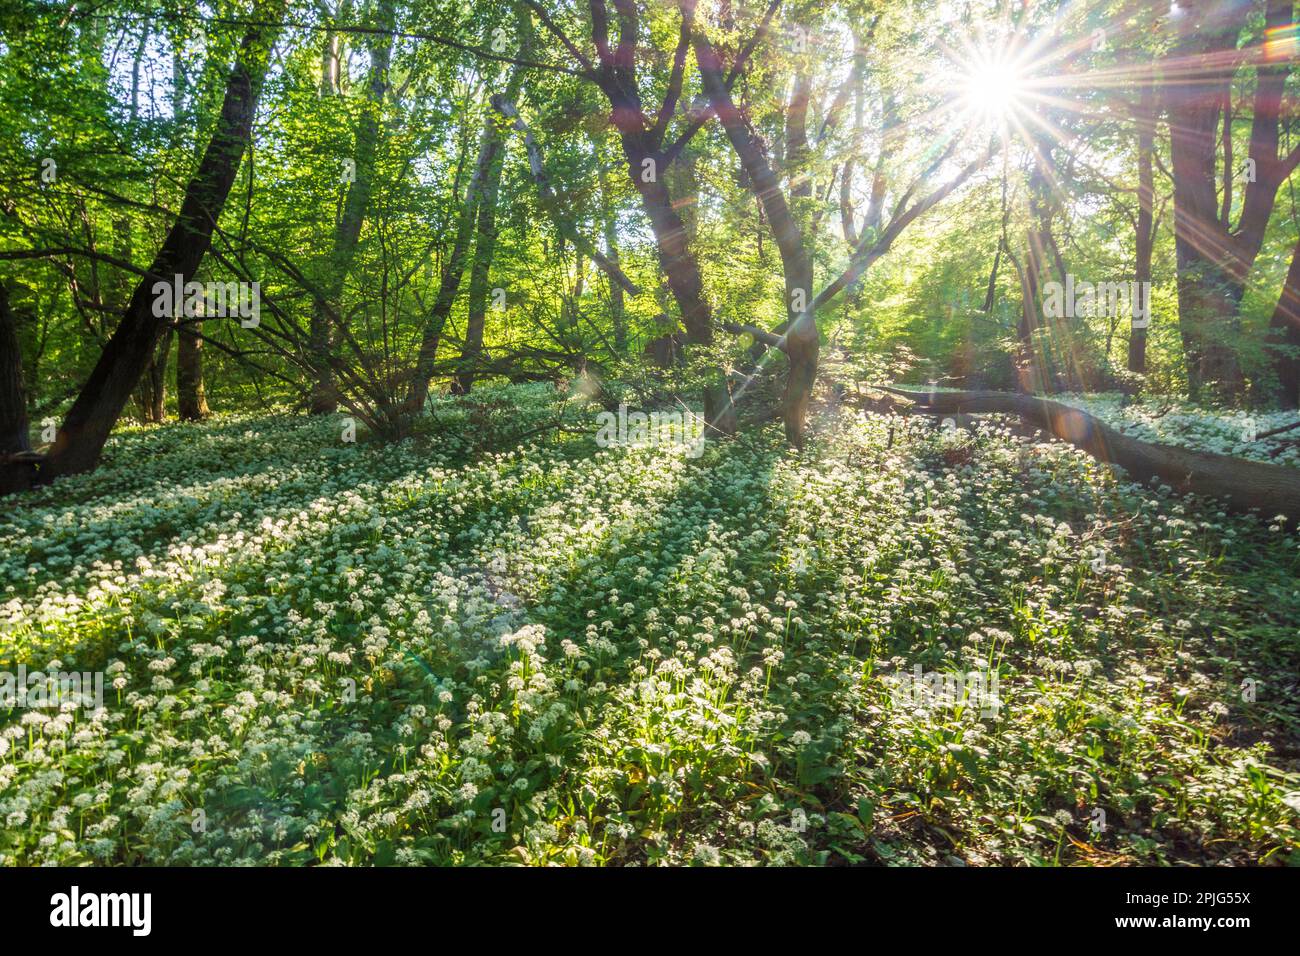 Nationalpark Donau-Auen, Danube-Auen National Park: flowering wild garlic (Allium ursinum), forest, deep standing sun in Donau, Niederösterreich, Lowe Stock Photo